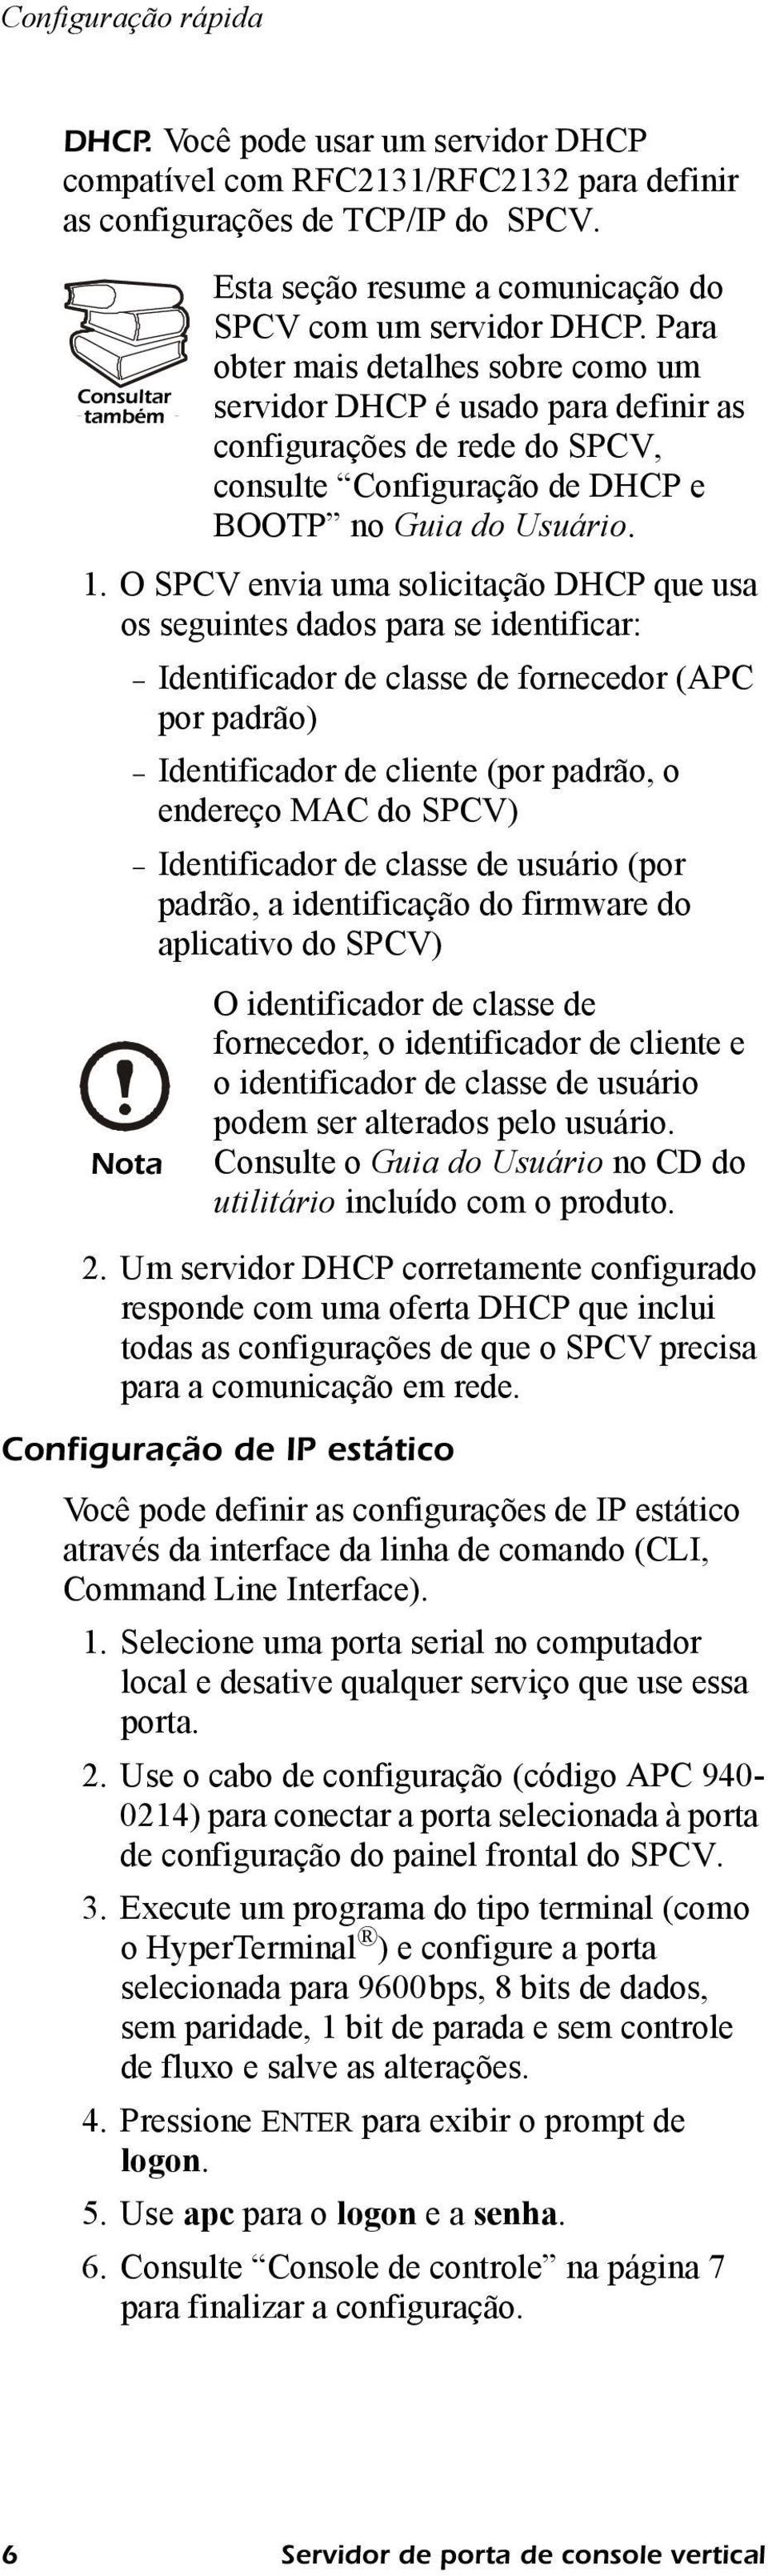 Identificador de classe de usuário (por padrão, a identificação do firmware do aplicativo do SPCV) Nota Esta seção resume a comunicação do SPCV com um servidor DHCP.